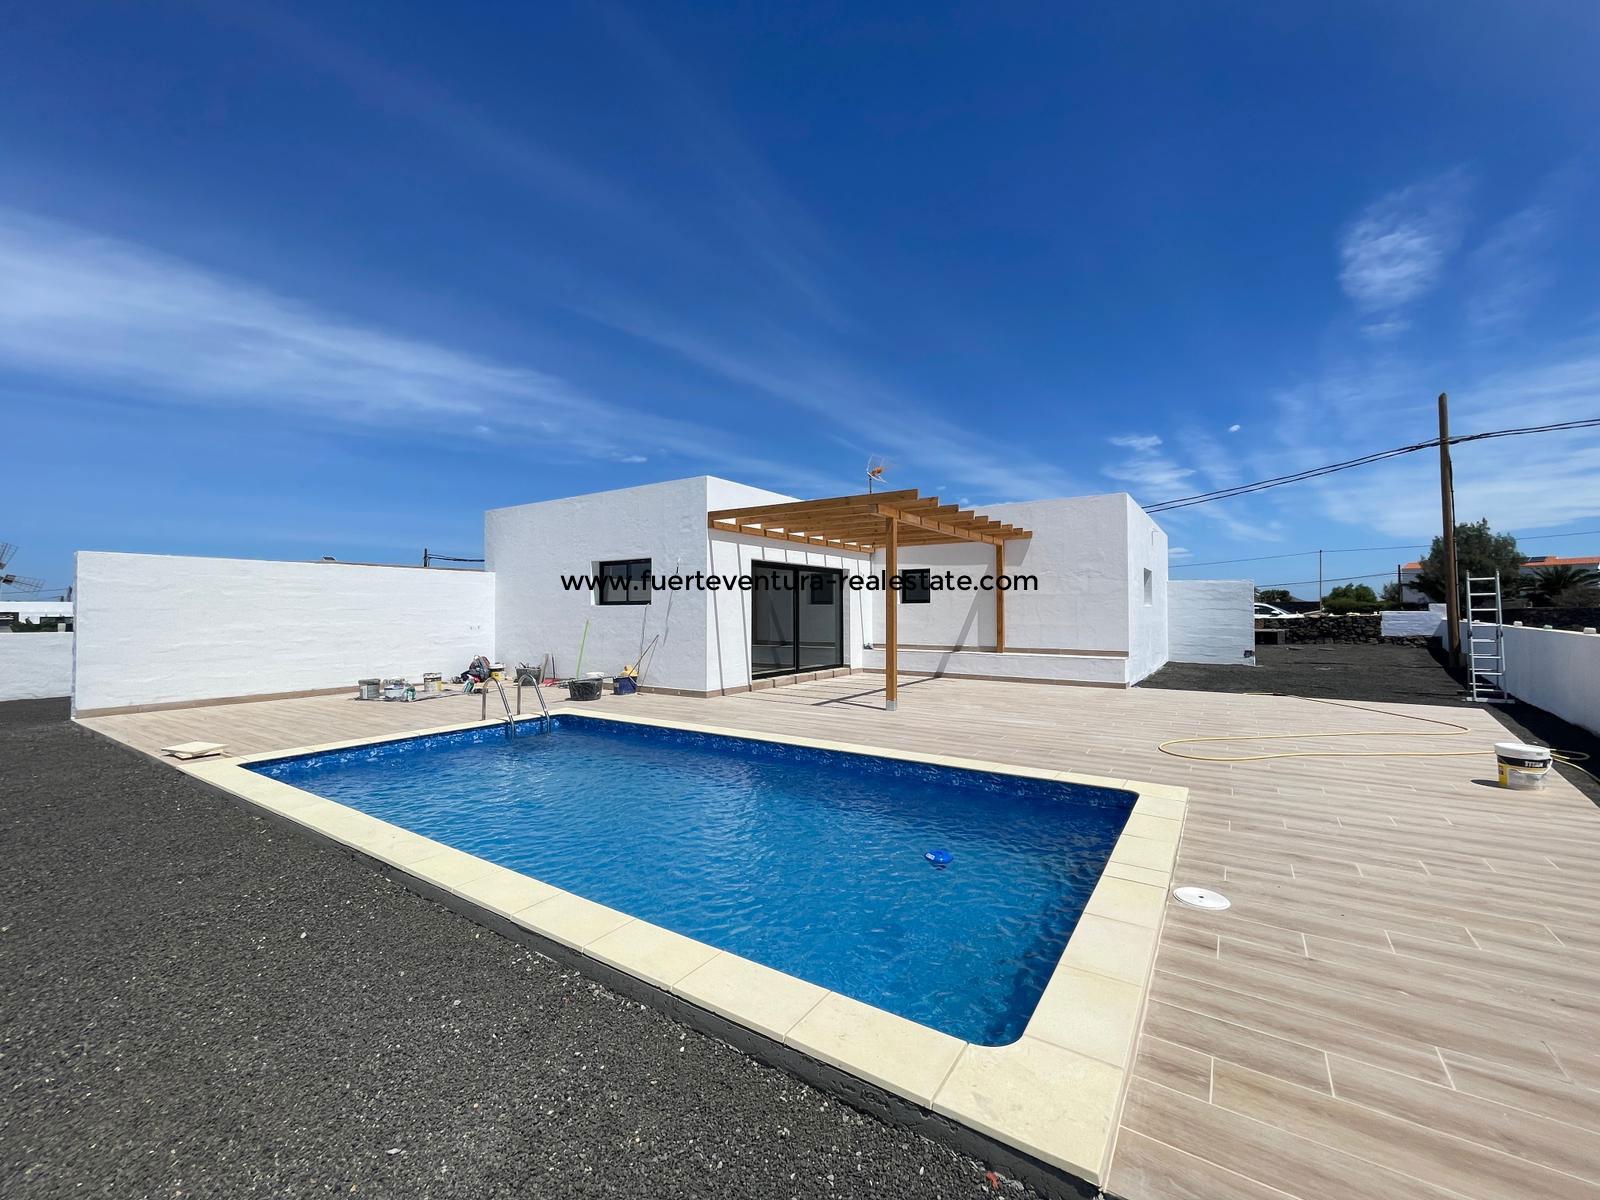 Een moderne nieuwbouwvilla met zwembad staat te koop in Lajares